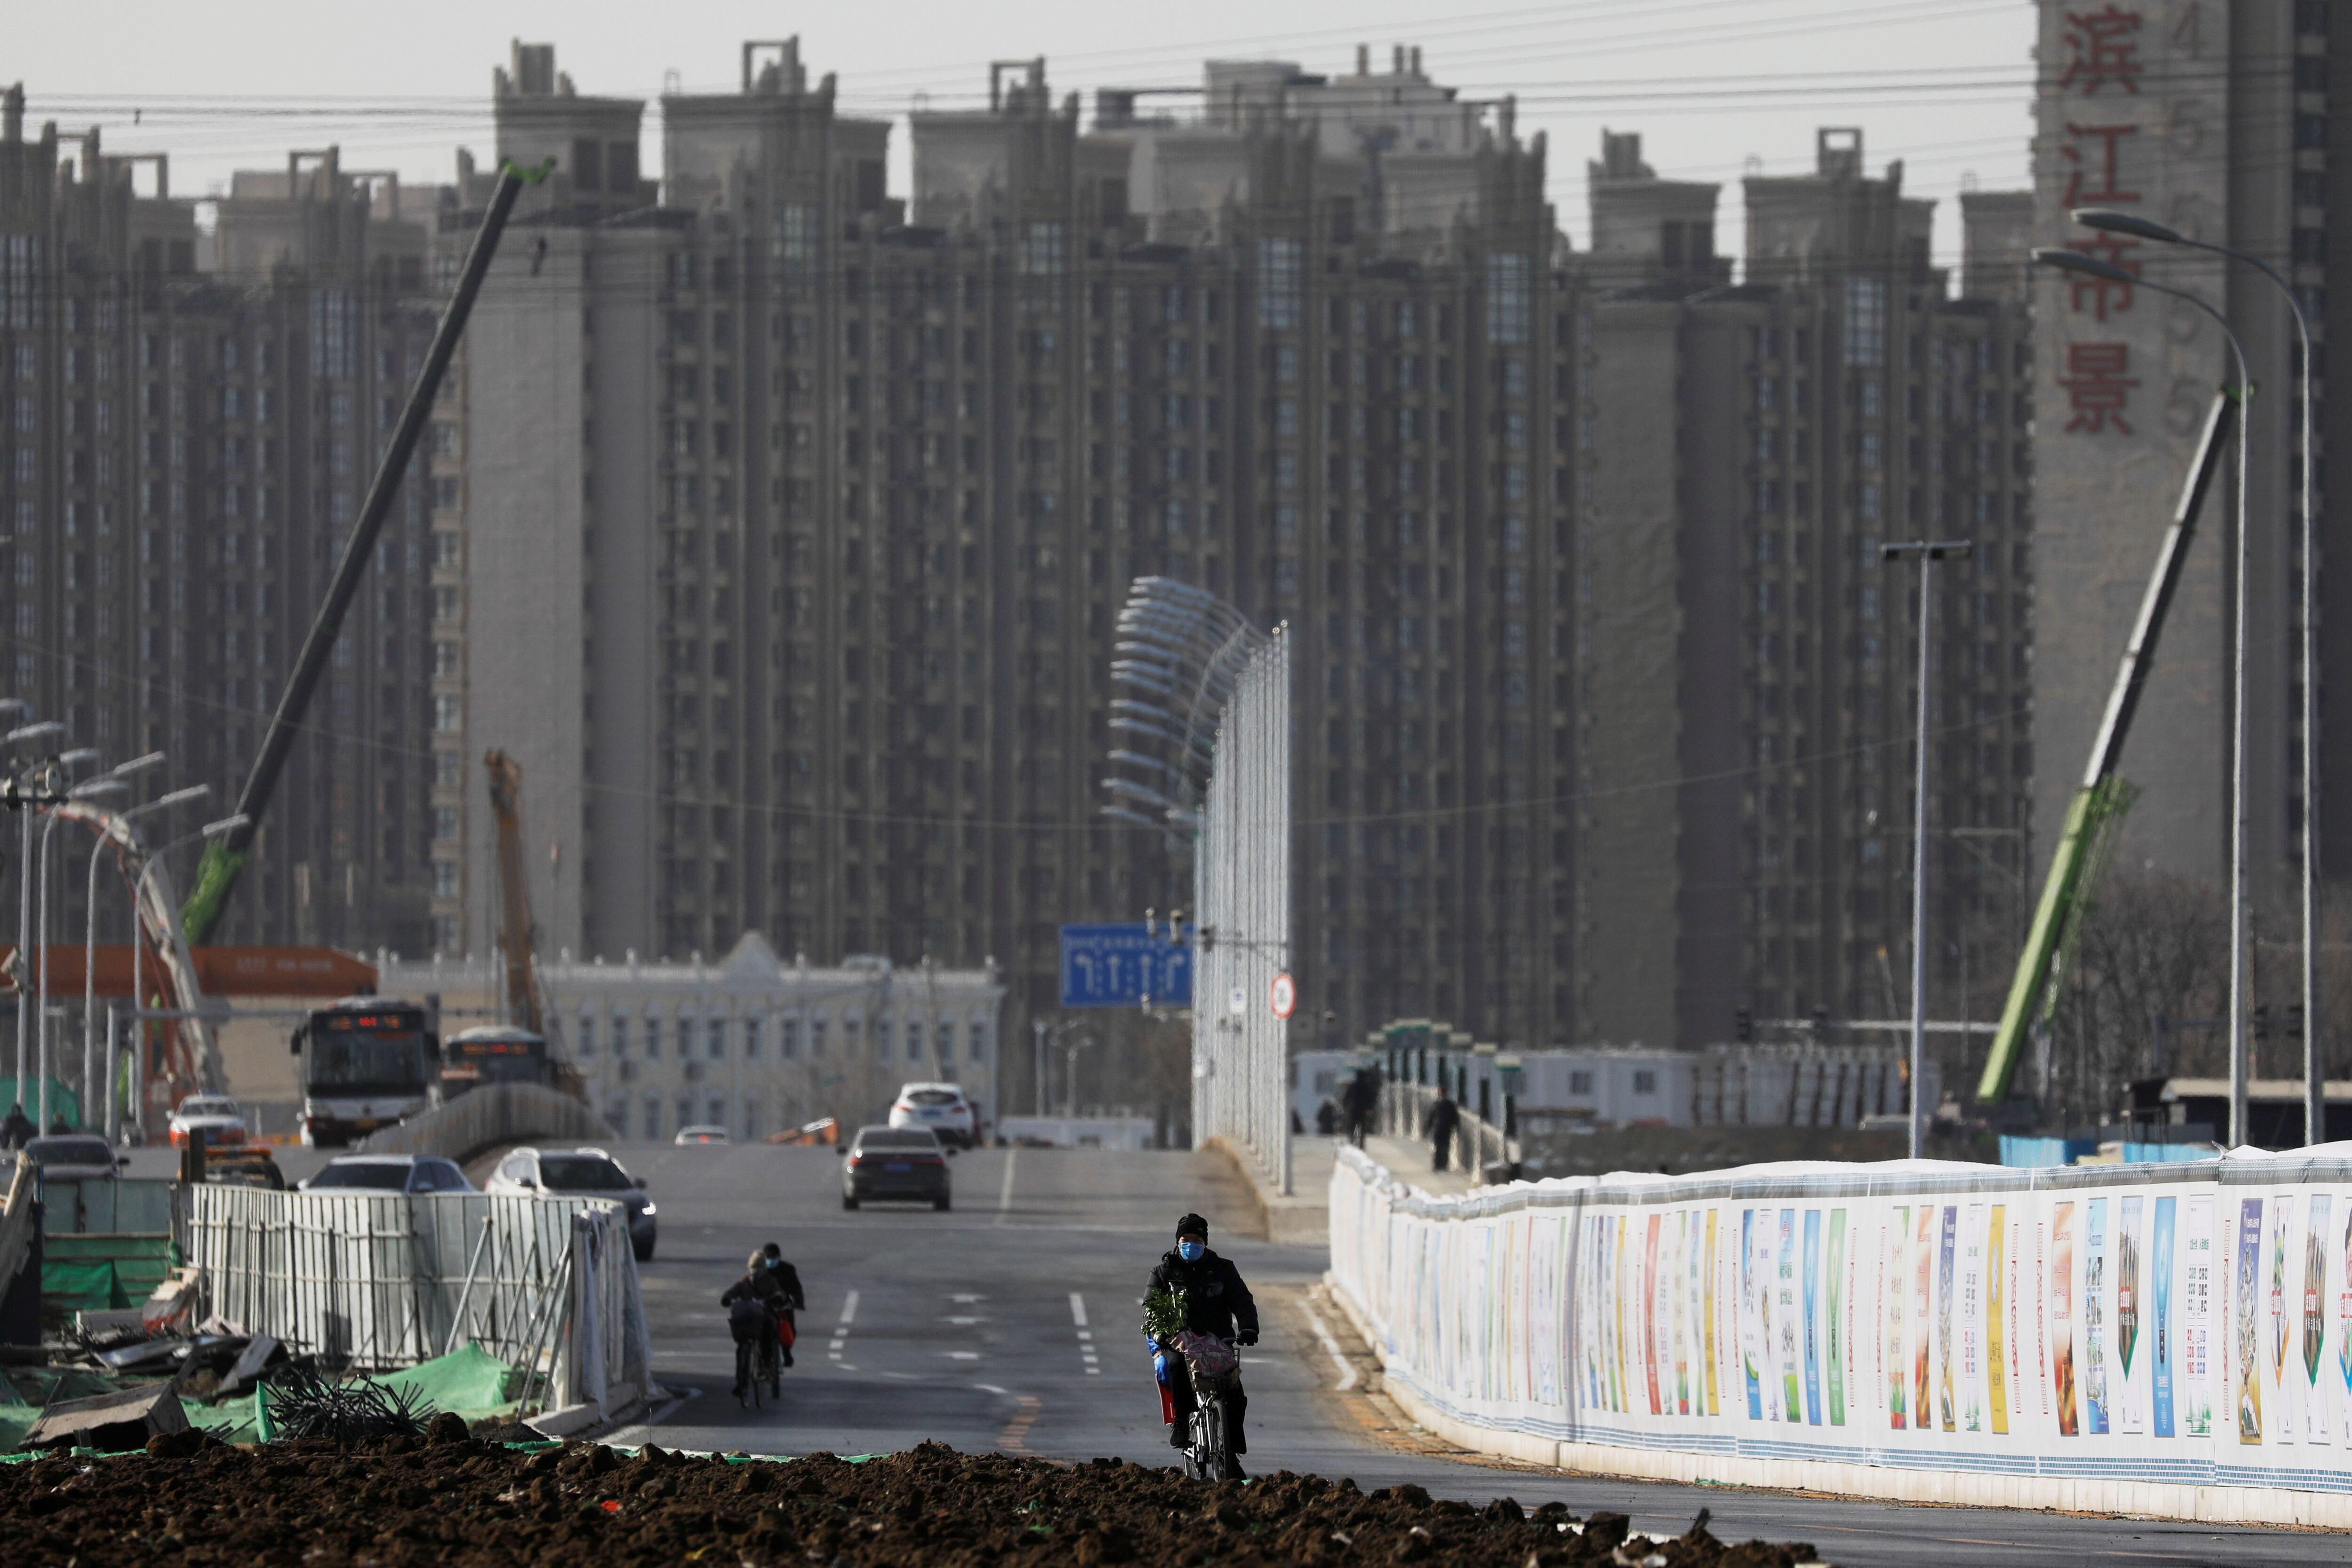 Un hombre anda en bicicleta junto a un sitio de construcción cerca de edificios residenciales en Beijing, China, el 13 de enero de 2021. (REUTERS/Tingshu Wang)